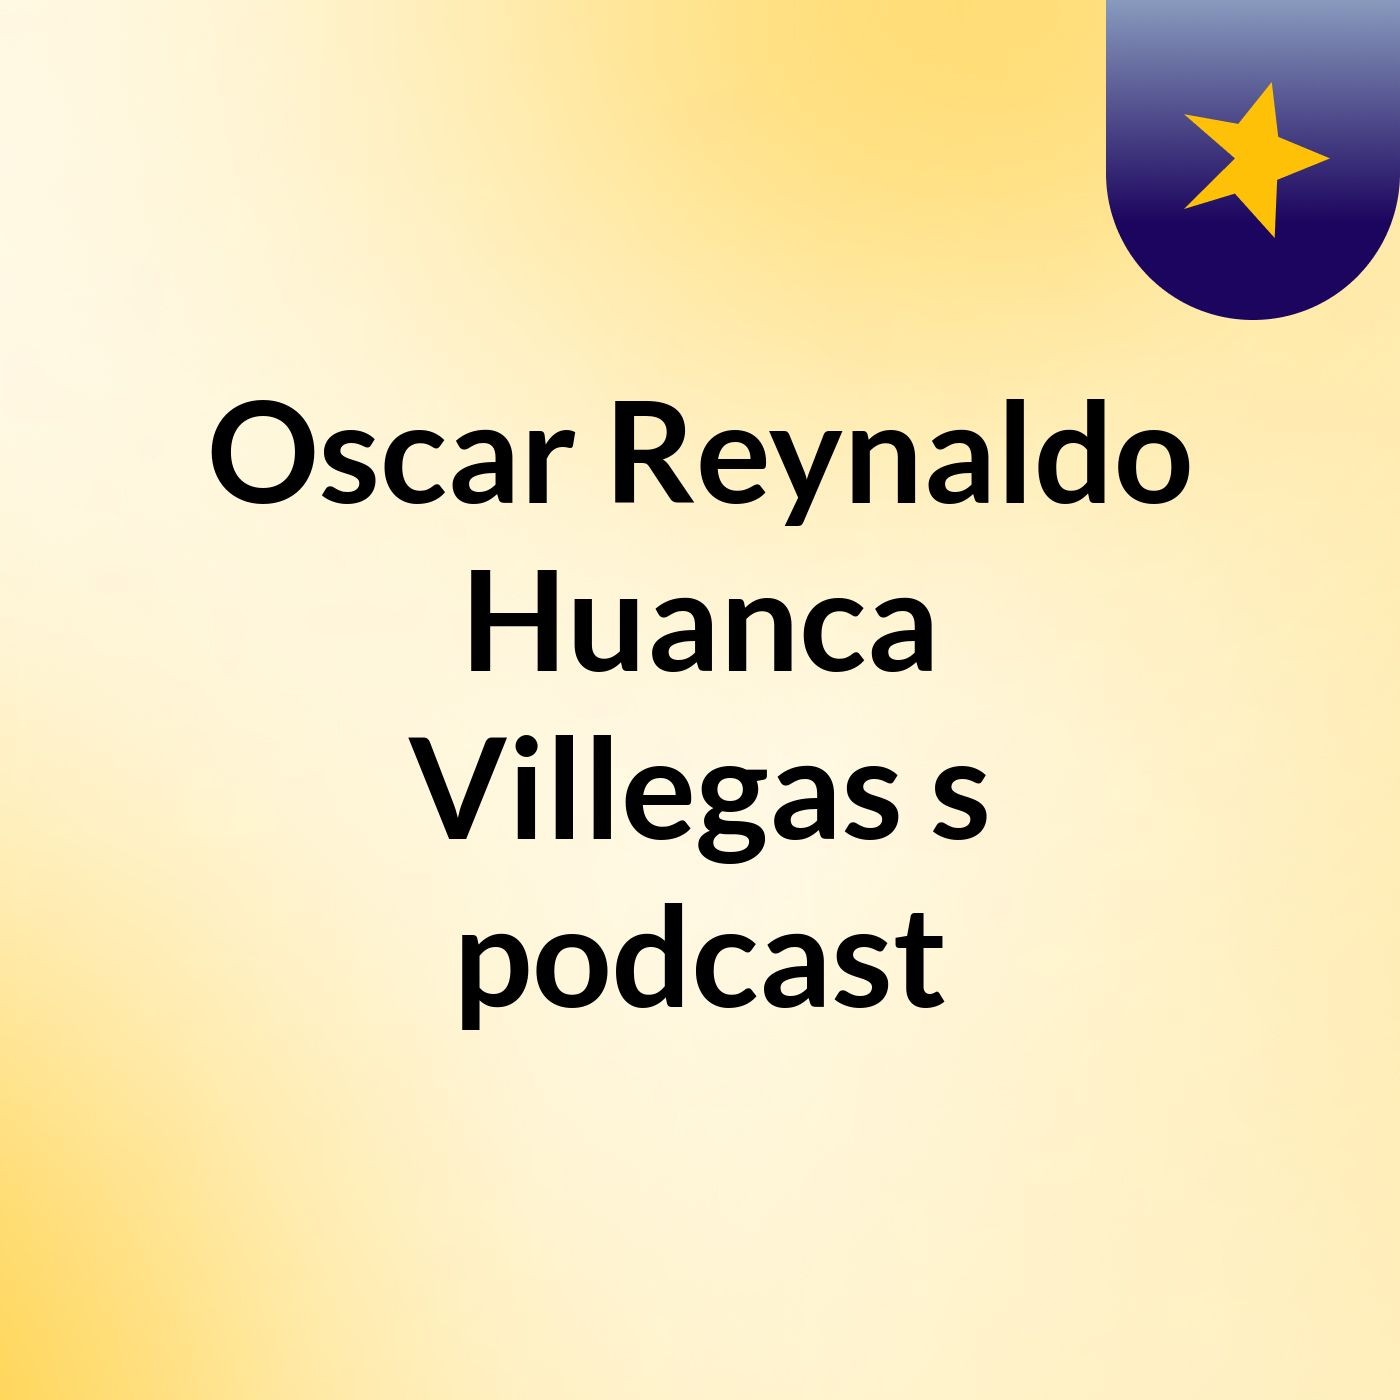 Oscar Reynaldo Huanca Villegas's podcast